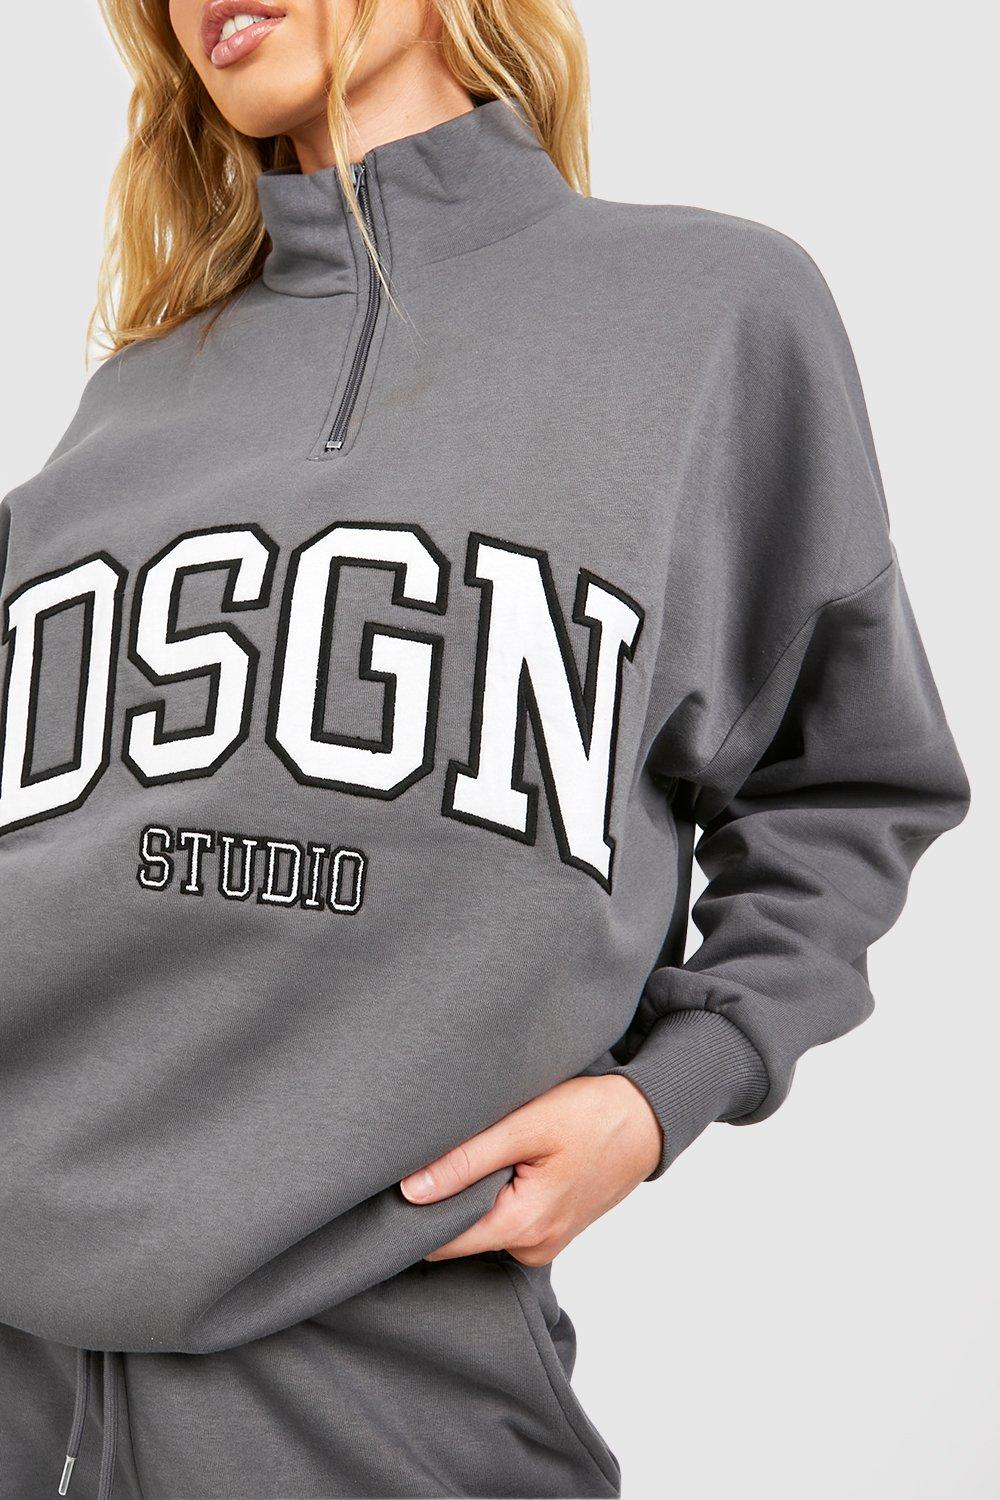 Dsgn Studio Applique Oversized Half Zip Sweatshirt